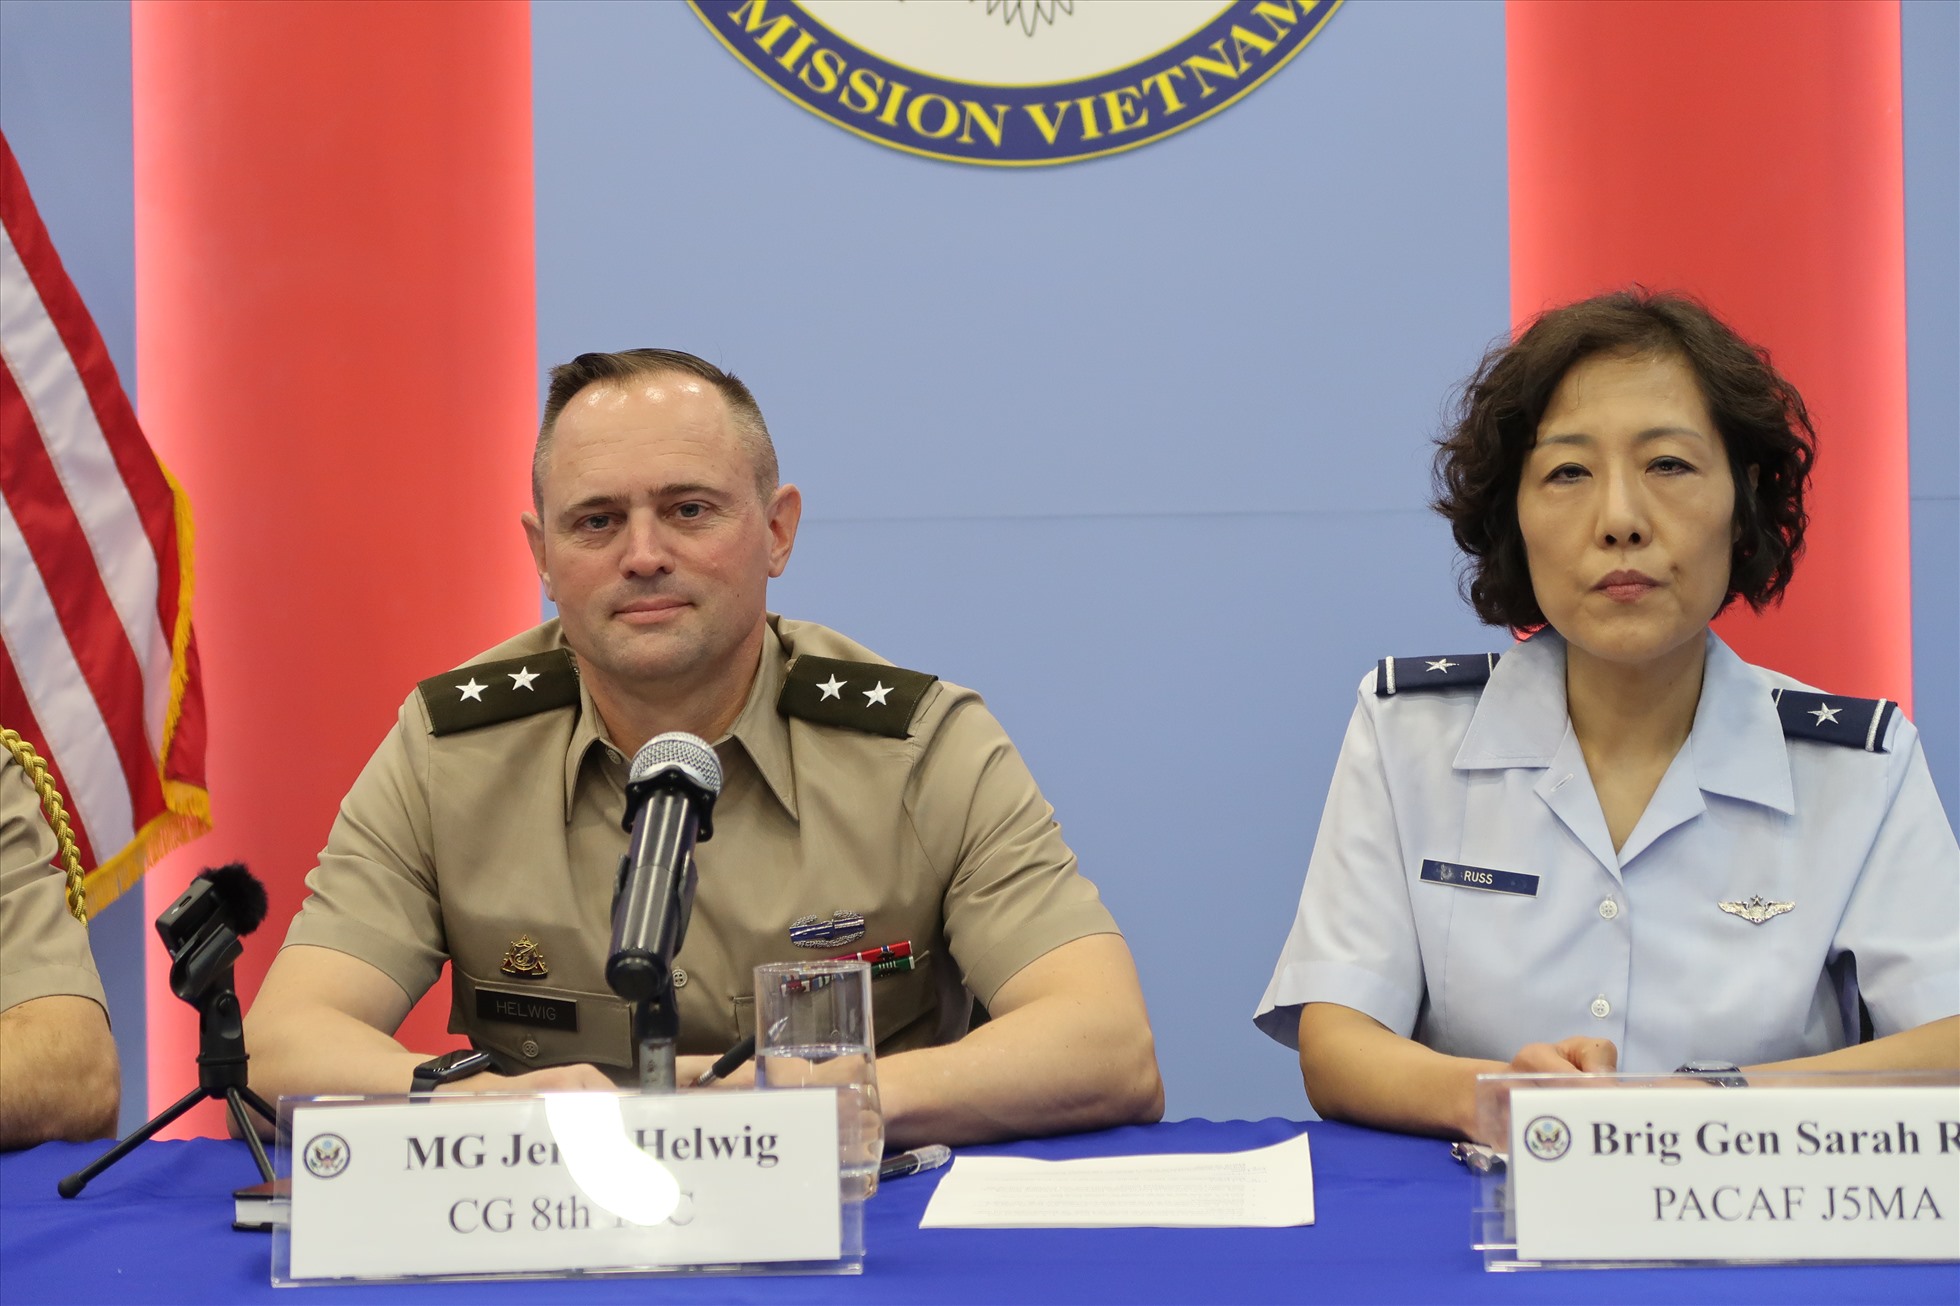 Thiếu tướng Jared Helwig (trái) và Chuẩn tướng Sarah Russ tại buổi họp báo ngày 9.12. Ảnh: Ngọc Vân